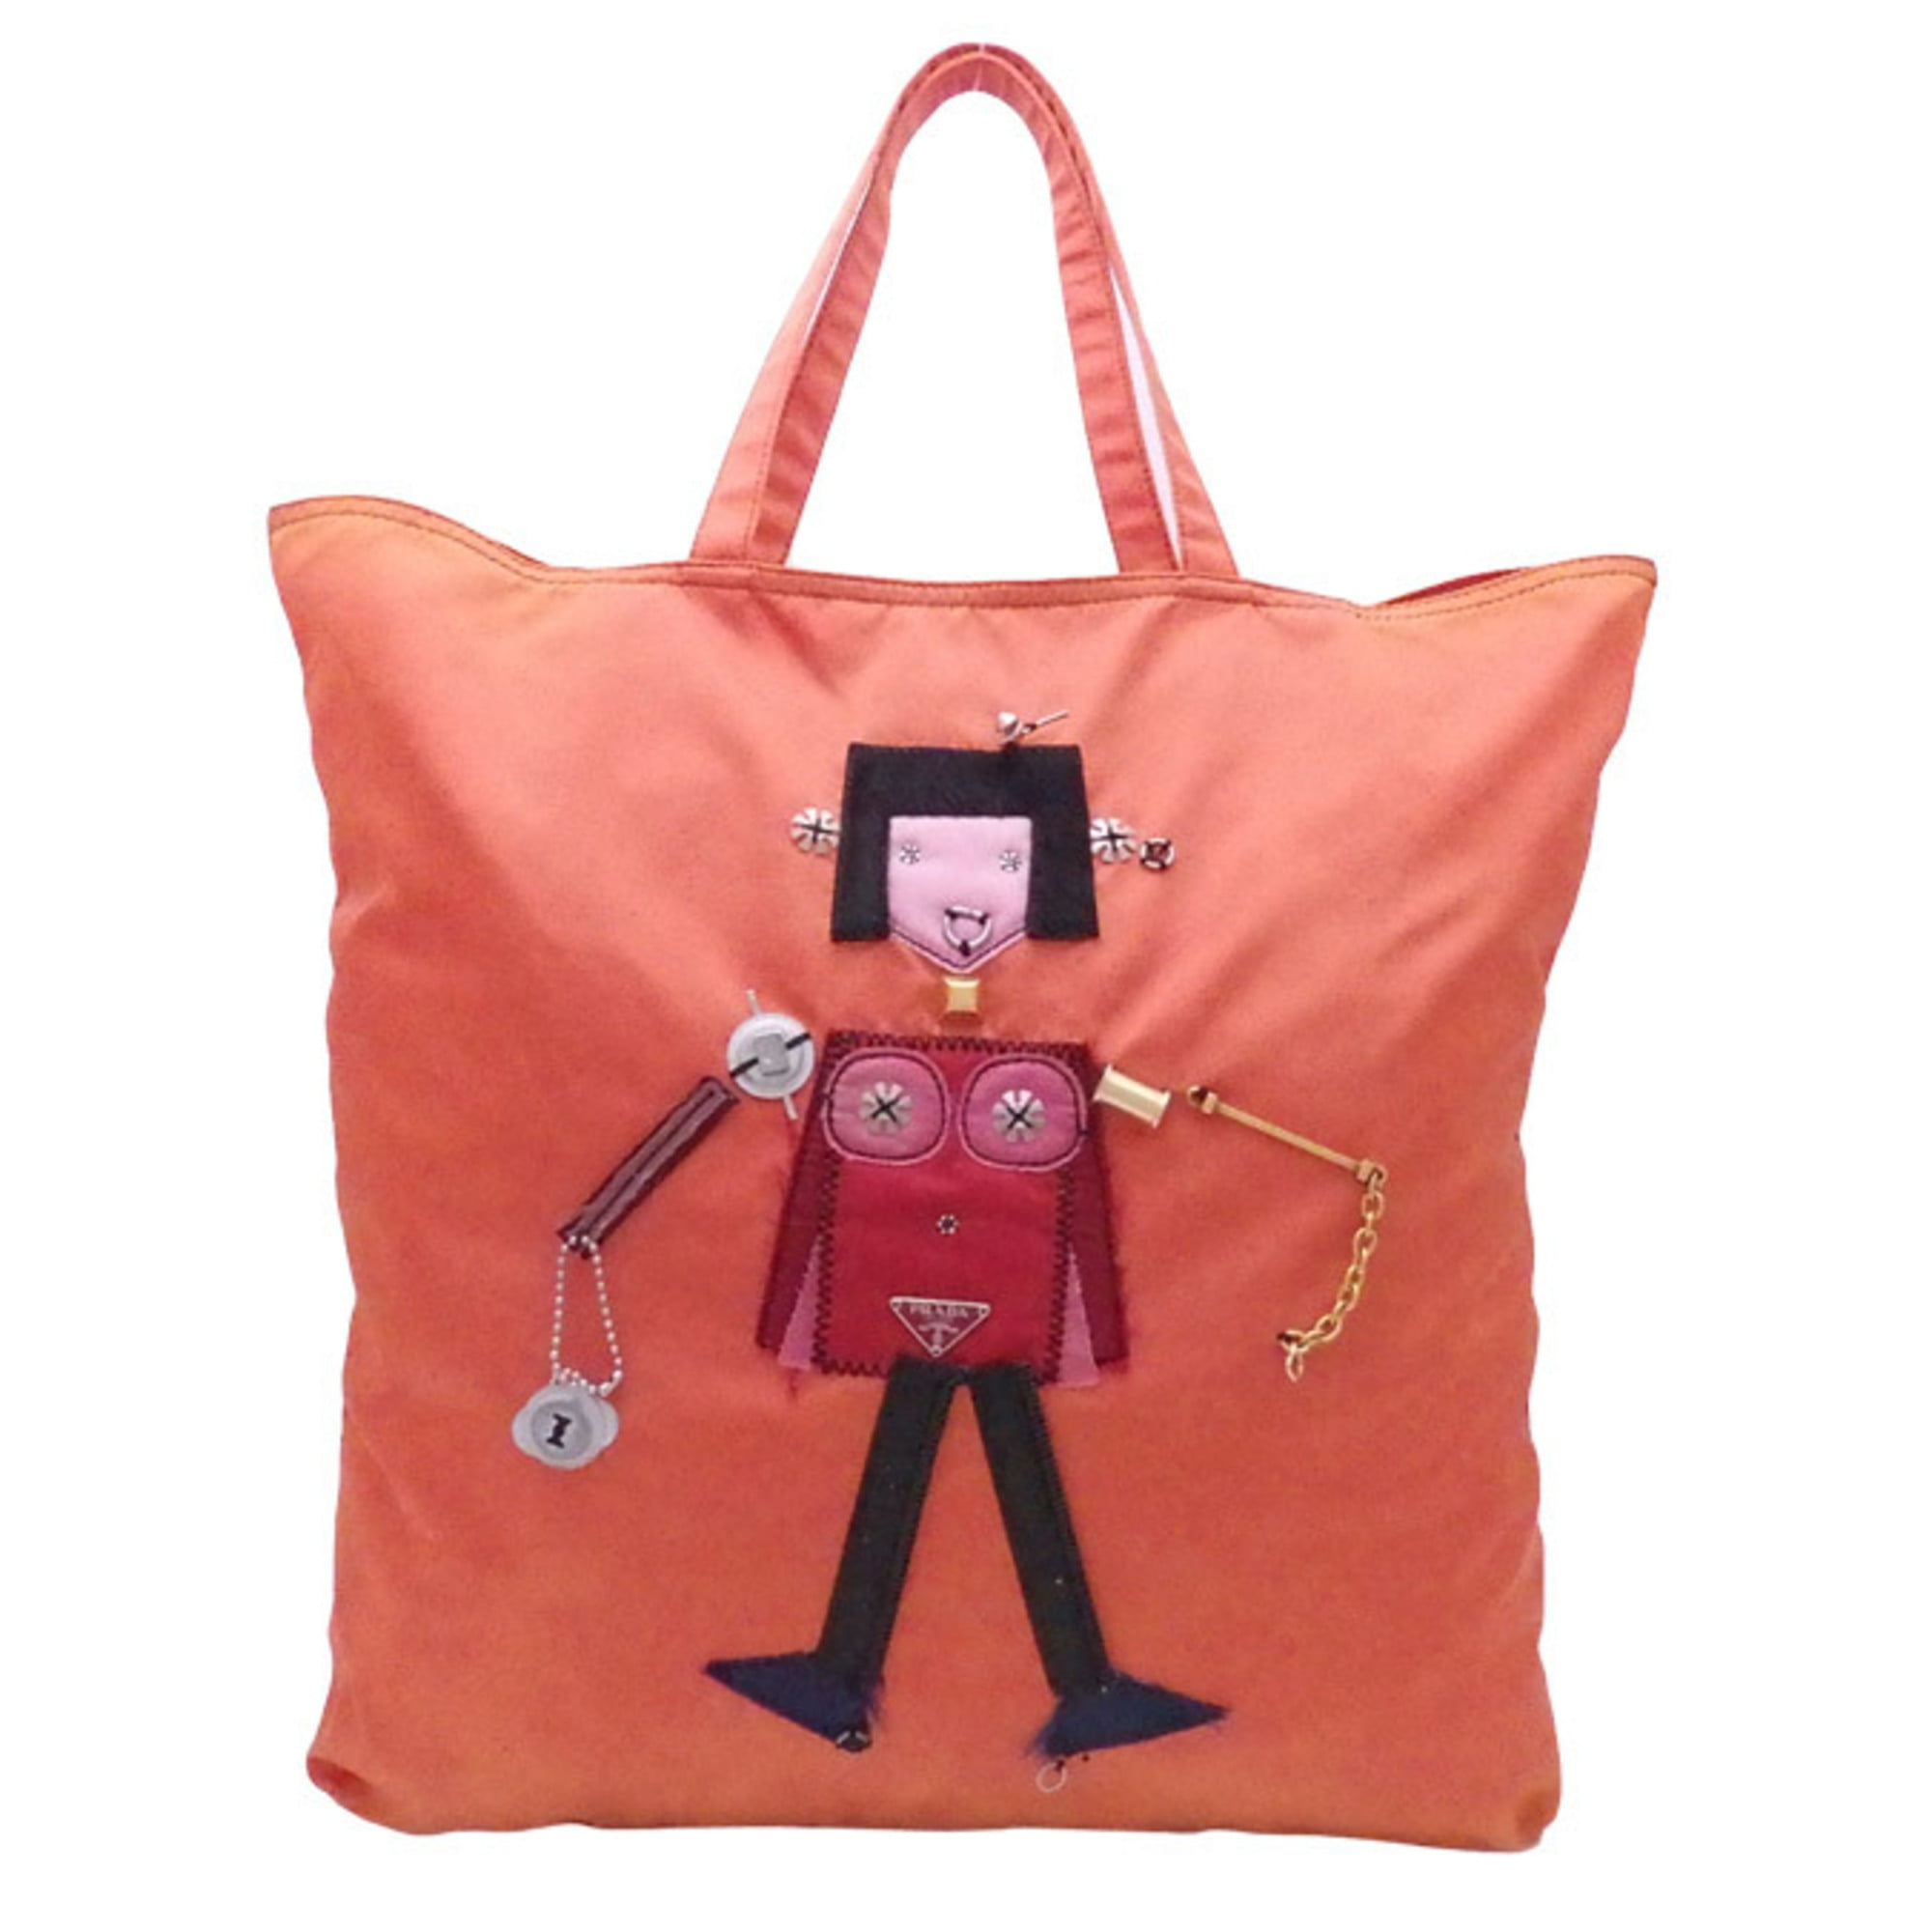 Authenticated Used Prada PRADA tote bag robot orange x multicolor